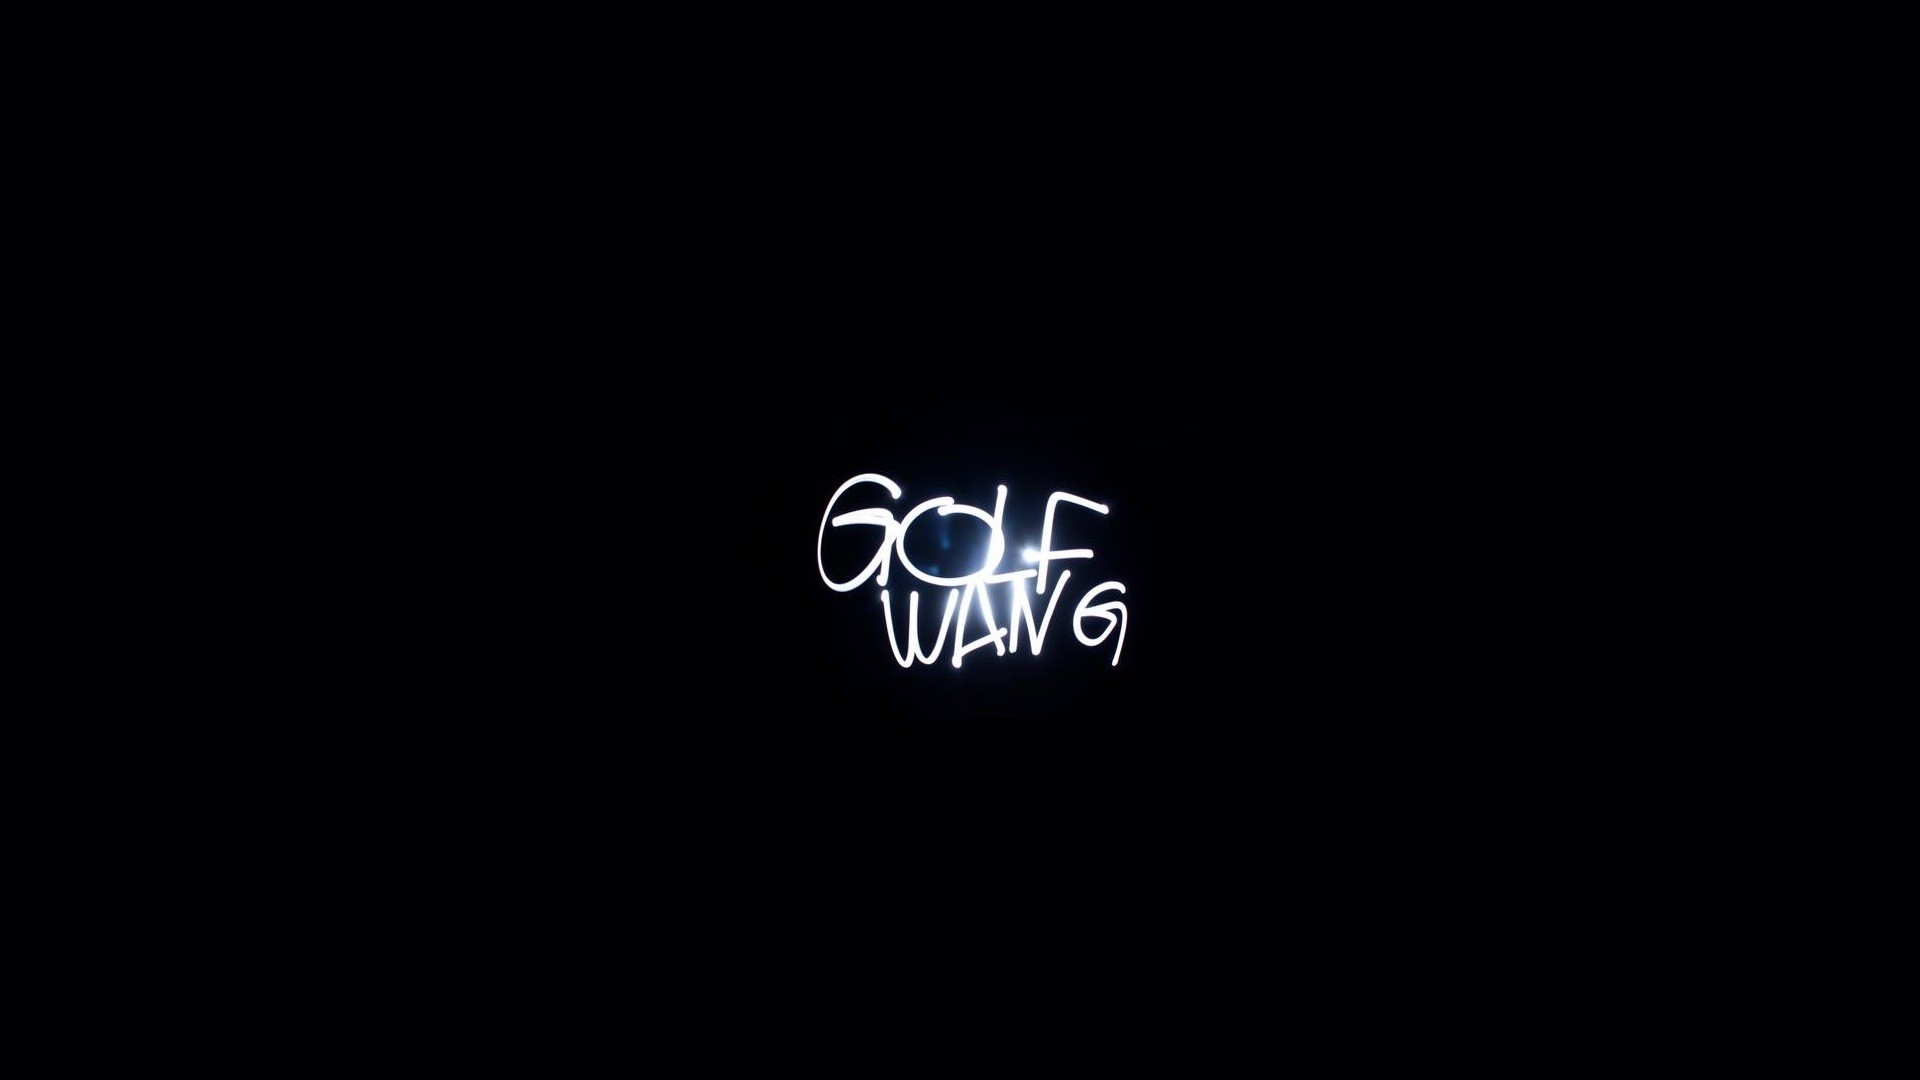 Golf wang wallpaper